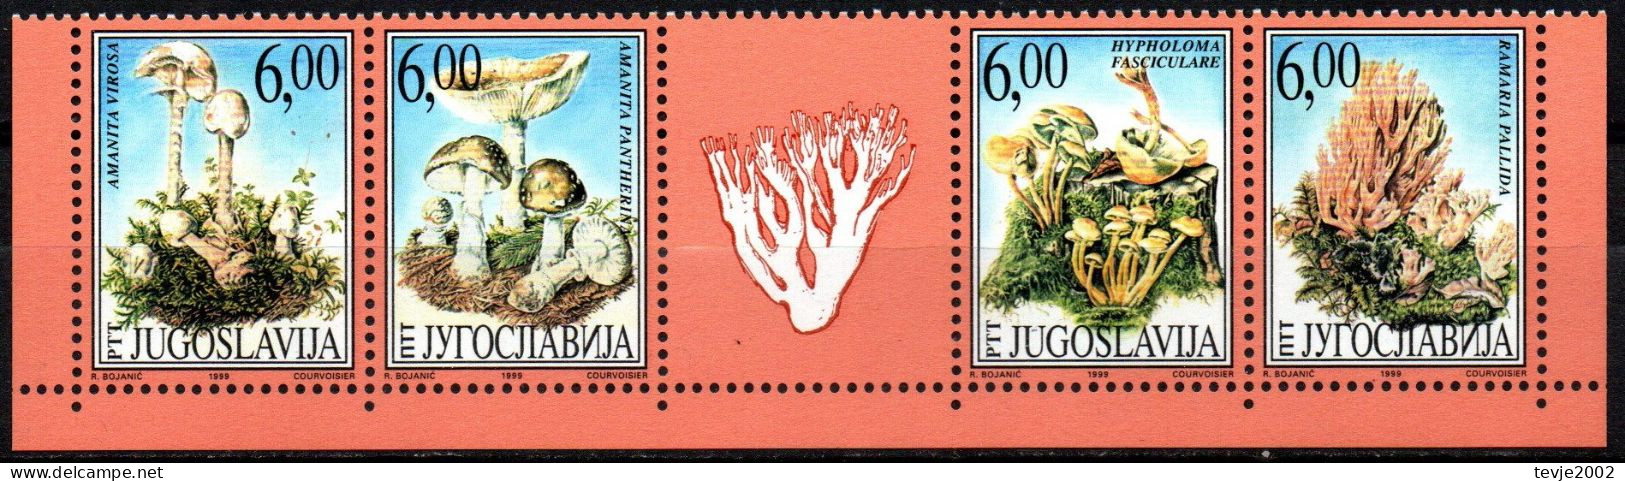 Jugoslawien 1999 - Mi.Nr. 2914 - 2917 - Postfrisch MNH - Pilze Mushrooms - Pilze